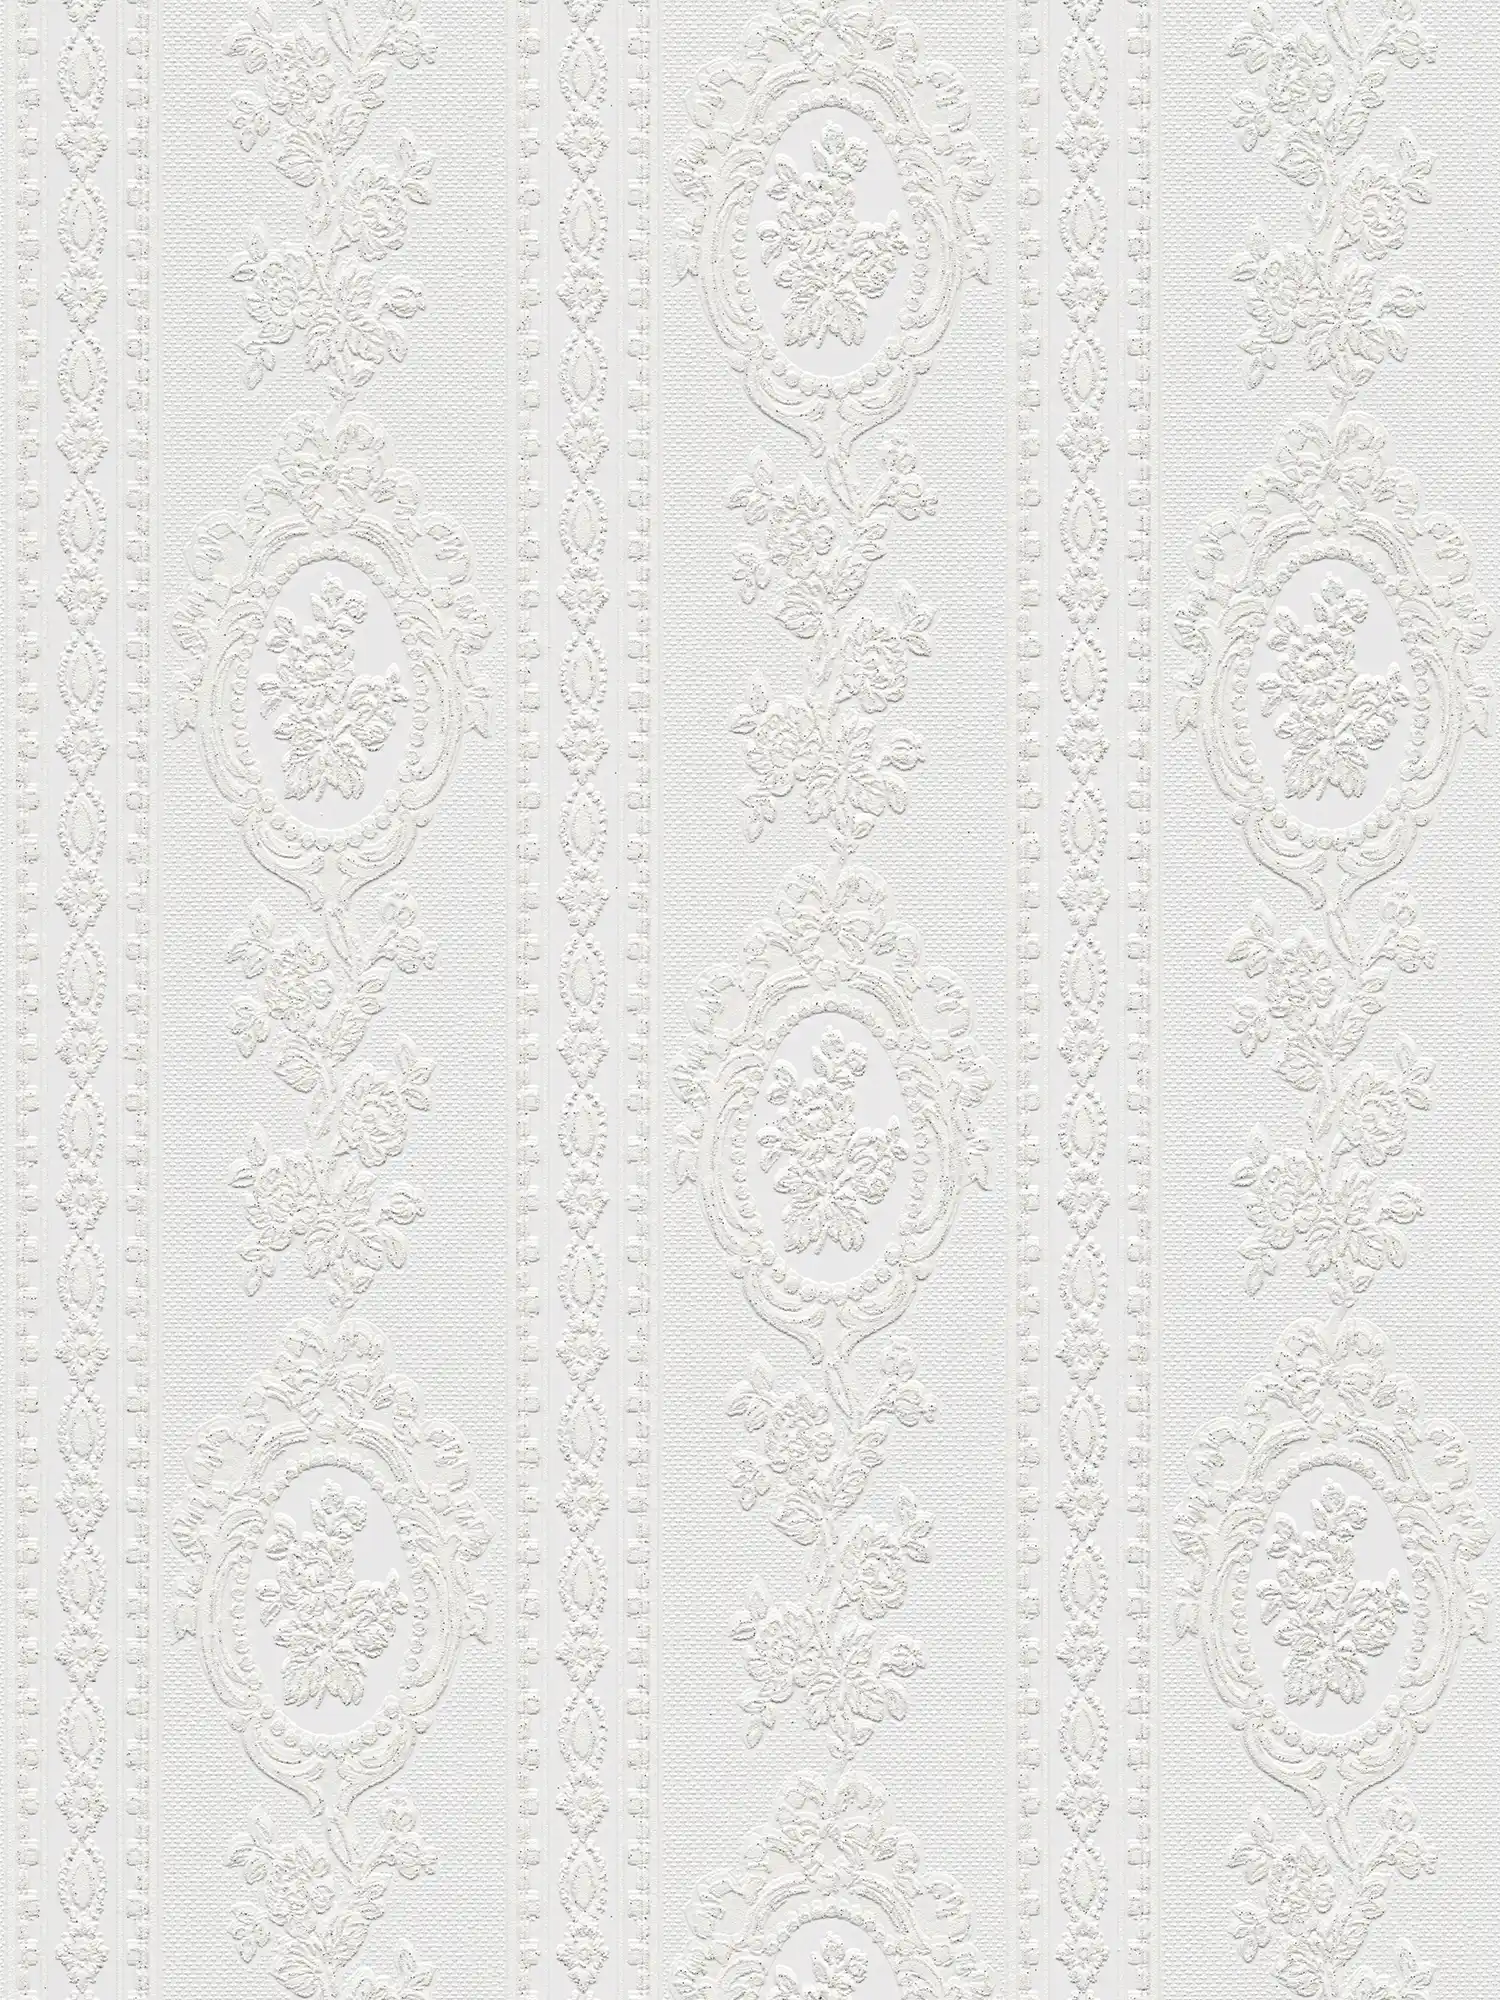         Ornamenttapete florale Elemente, Streifen und Blumen – Weiß
    